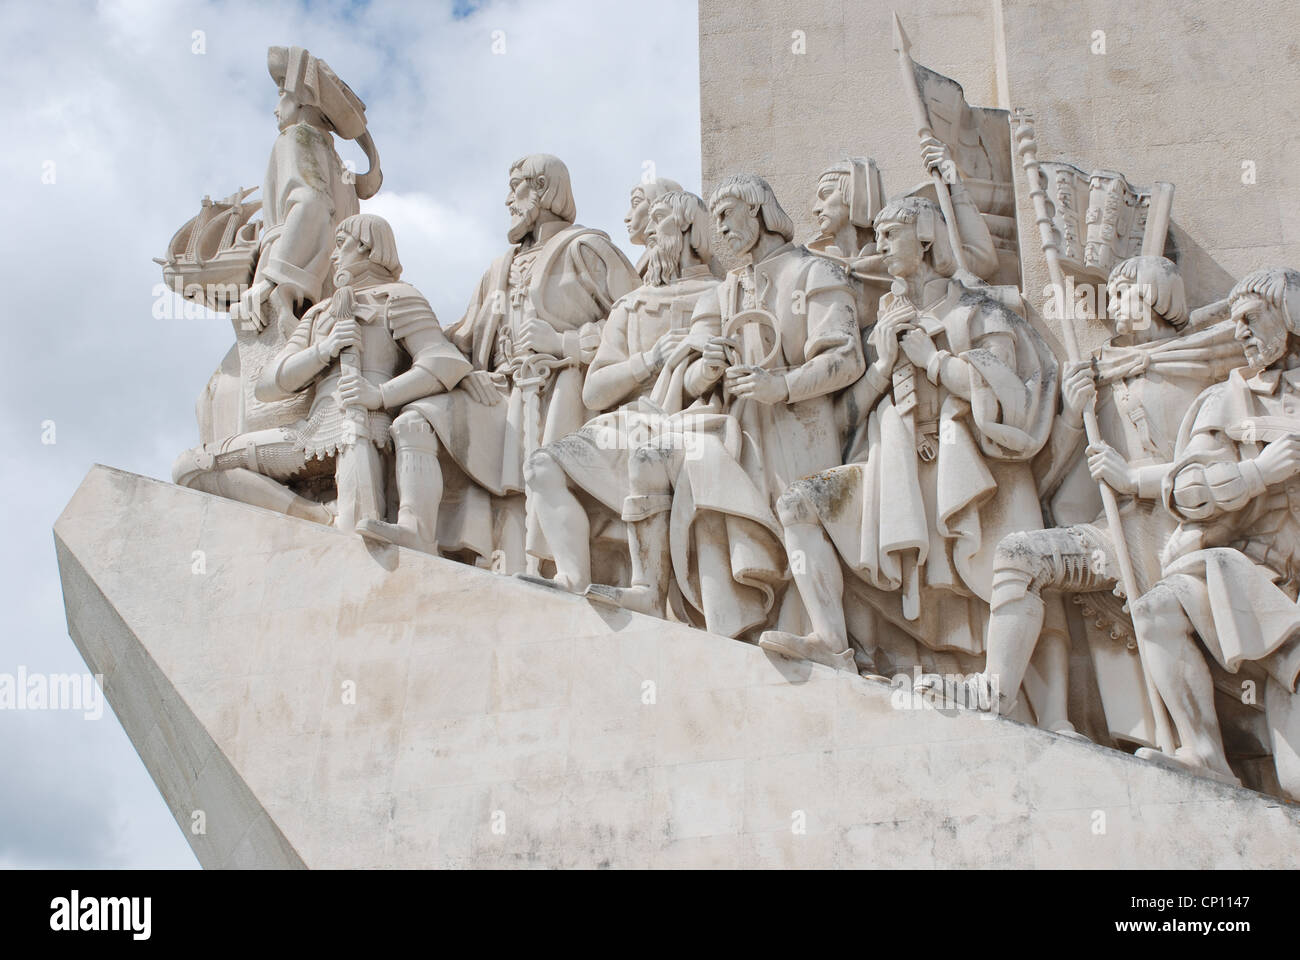 Padrão dos Descobrimentos, Henry the Navigator Monument to the discoveries, Lisbon, Portugal. Stock Photo